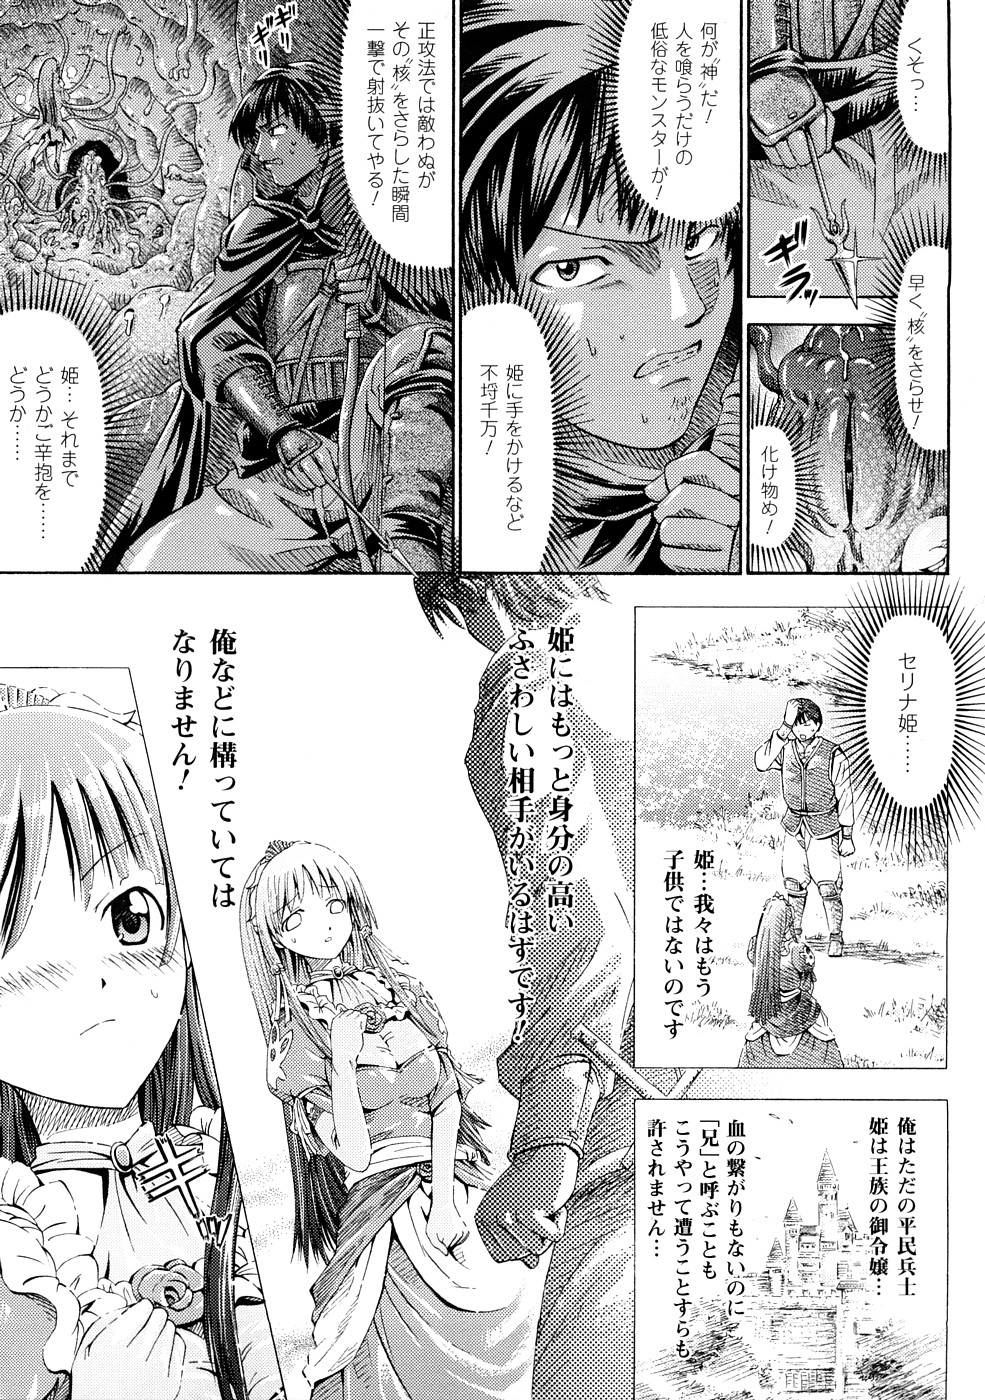 [Horitomo] Fairy Tales page 8 full